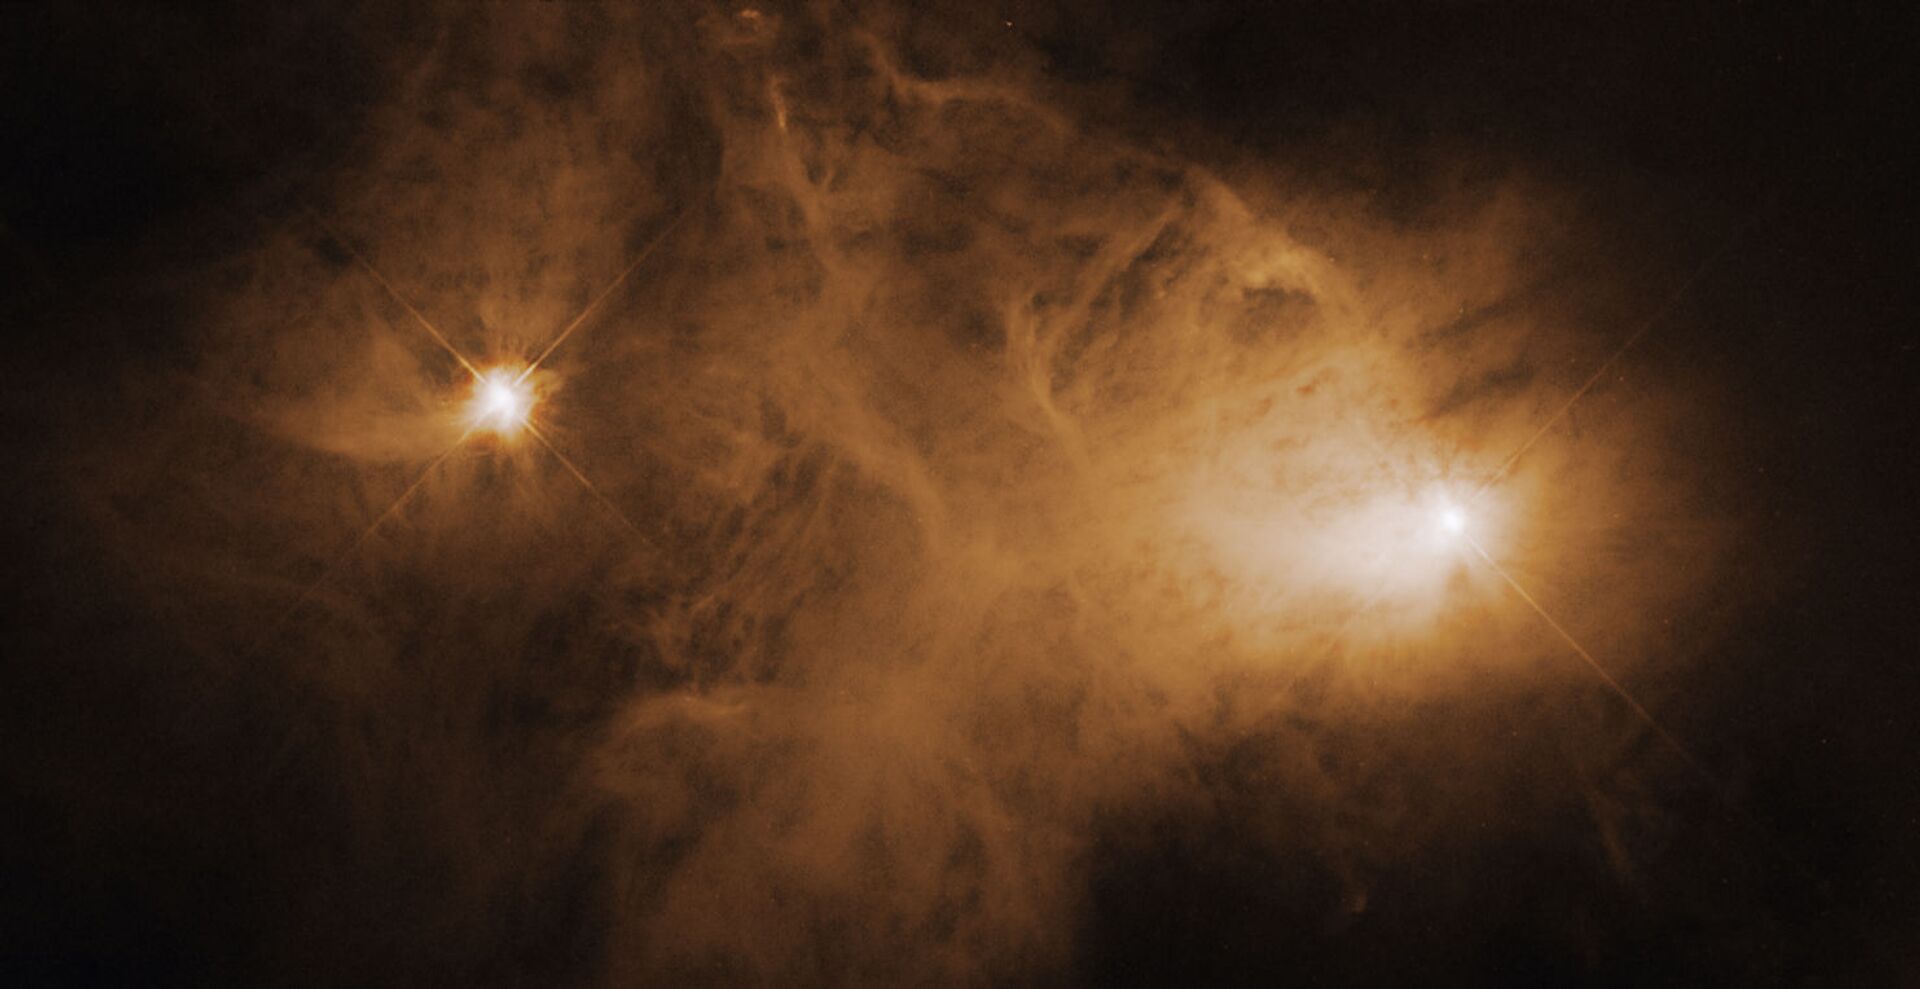 Nebulosa Caldwell 68 é uma nuvem interestelar de poeira e gases. A estrela que ilumina a nebulosa é conhecida como uma estrela T Tauri, um tipo de estrela jovem cujo brilho muda ao longo do tempo. Frequentemente tais estrelas têm discos circunstelares, os quais circundam algumas estrelas jovens e que poderiam se desenvolver em sistemas solares muito parecidos com nosso - Sputnik Brasil, 1920, 09.11.2021